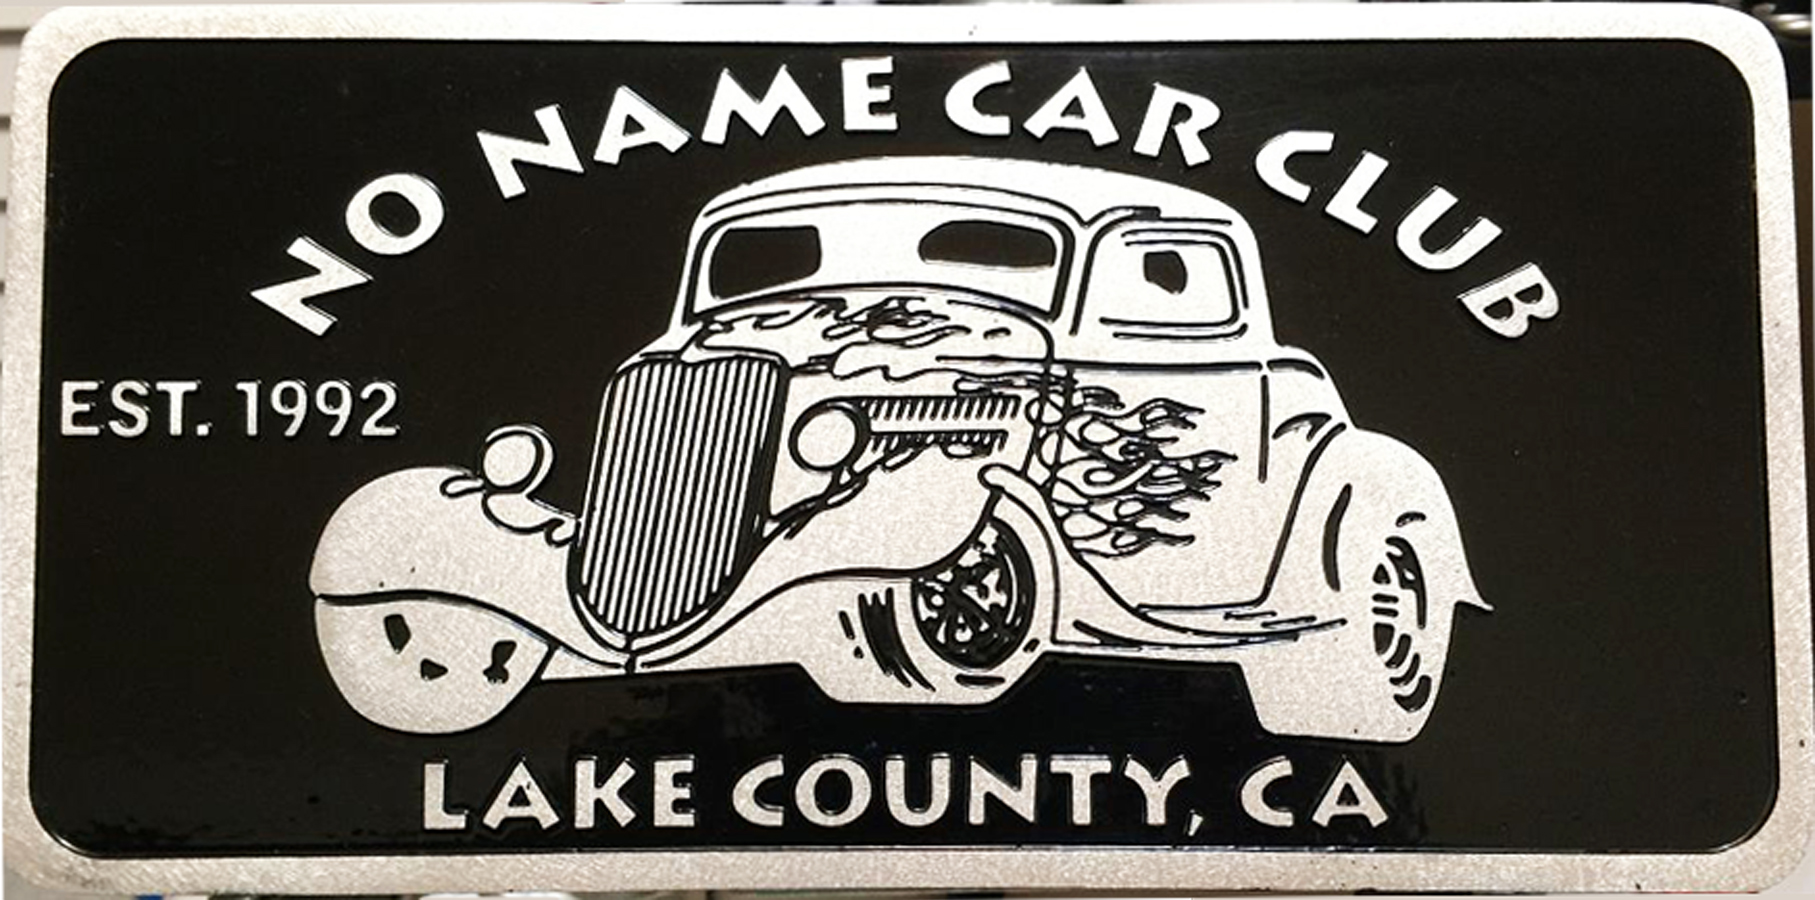 Car Club Plaque Cast Aluminum License Plate